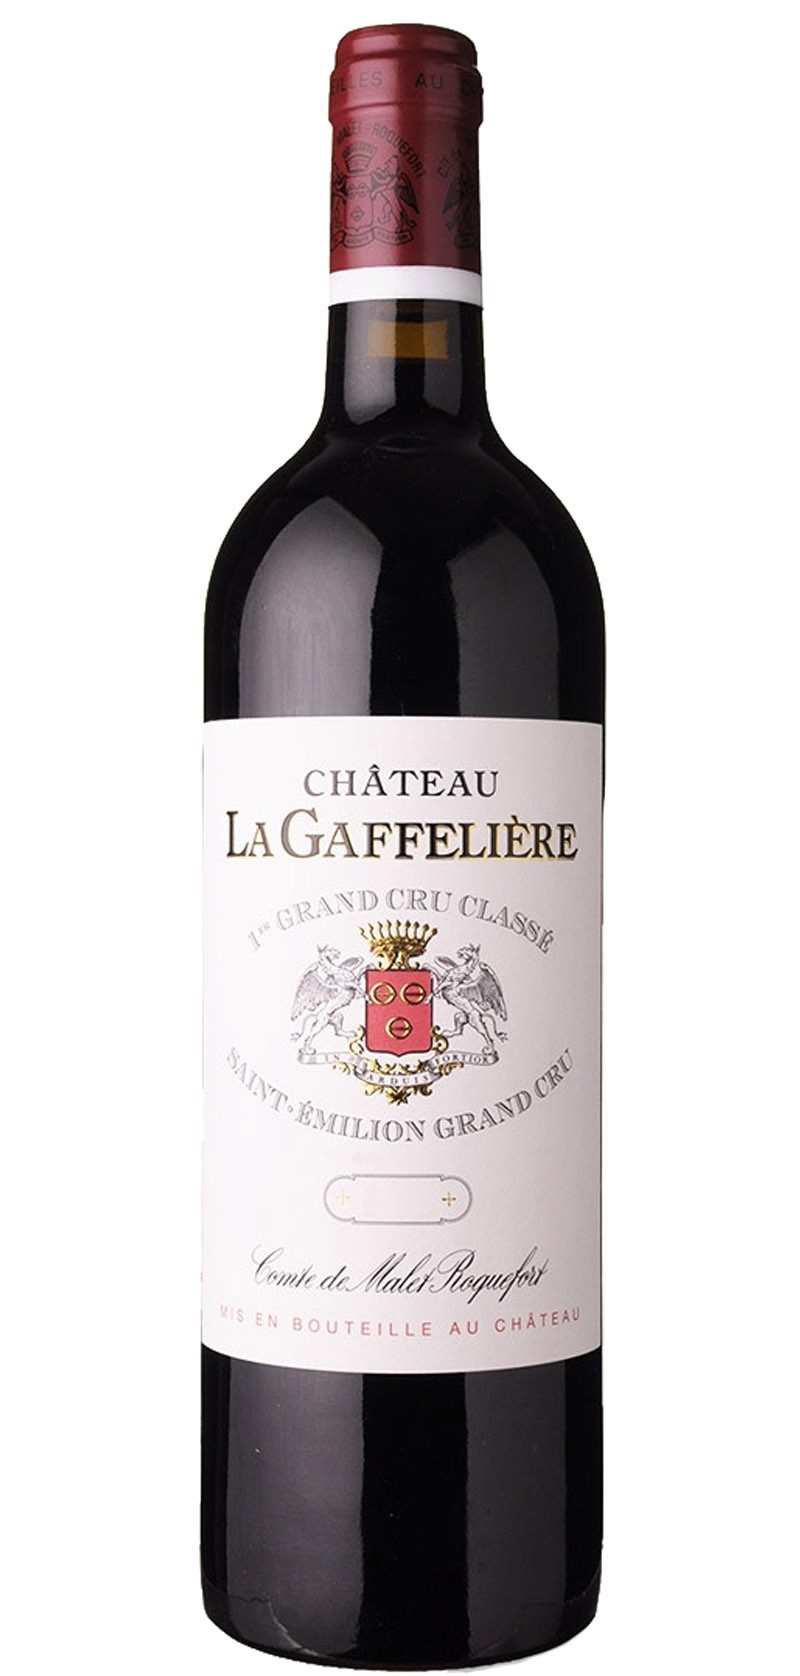 Château la Gaffelière 2016  -  Saint-Emilion 1er Appellation  grand cru classified "B"-red wine